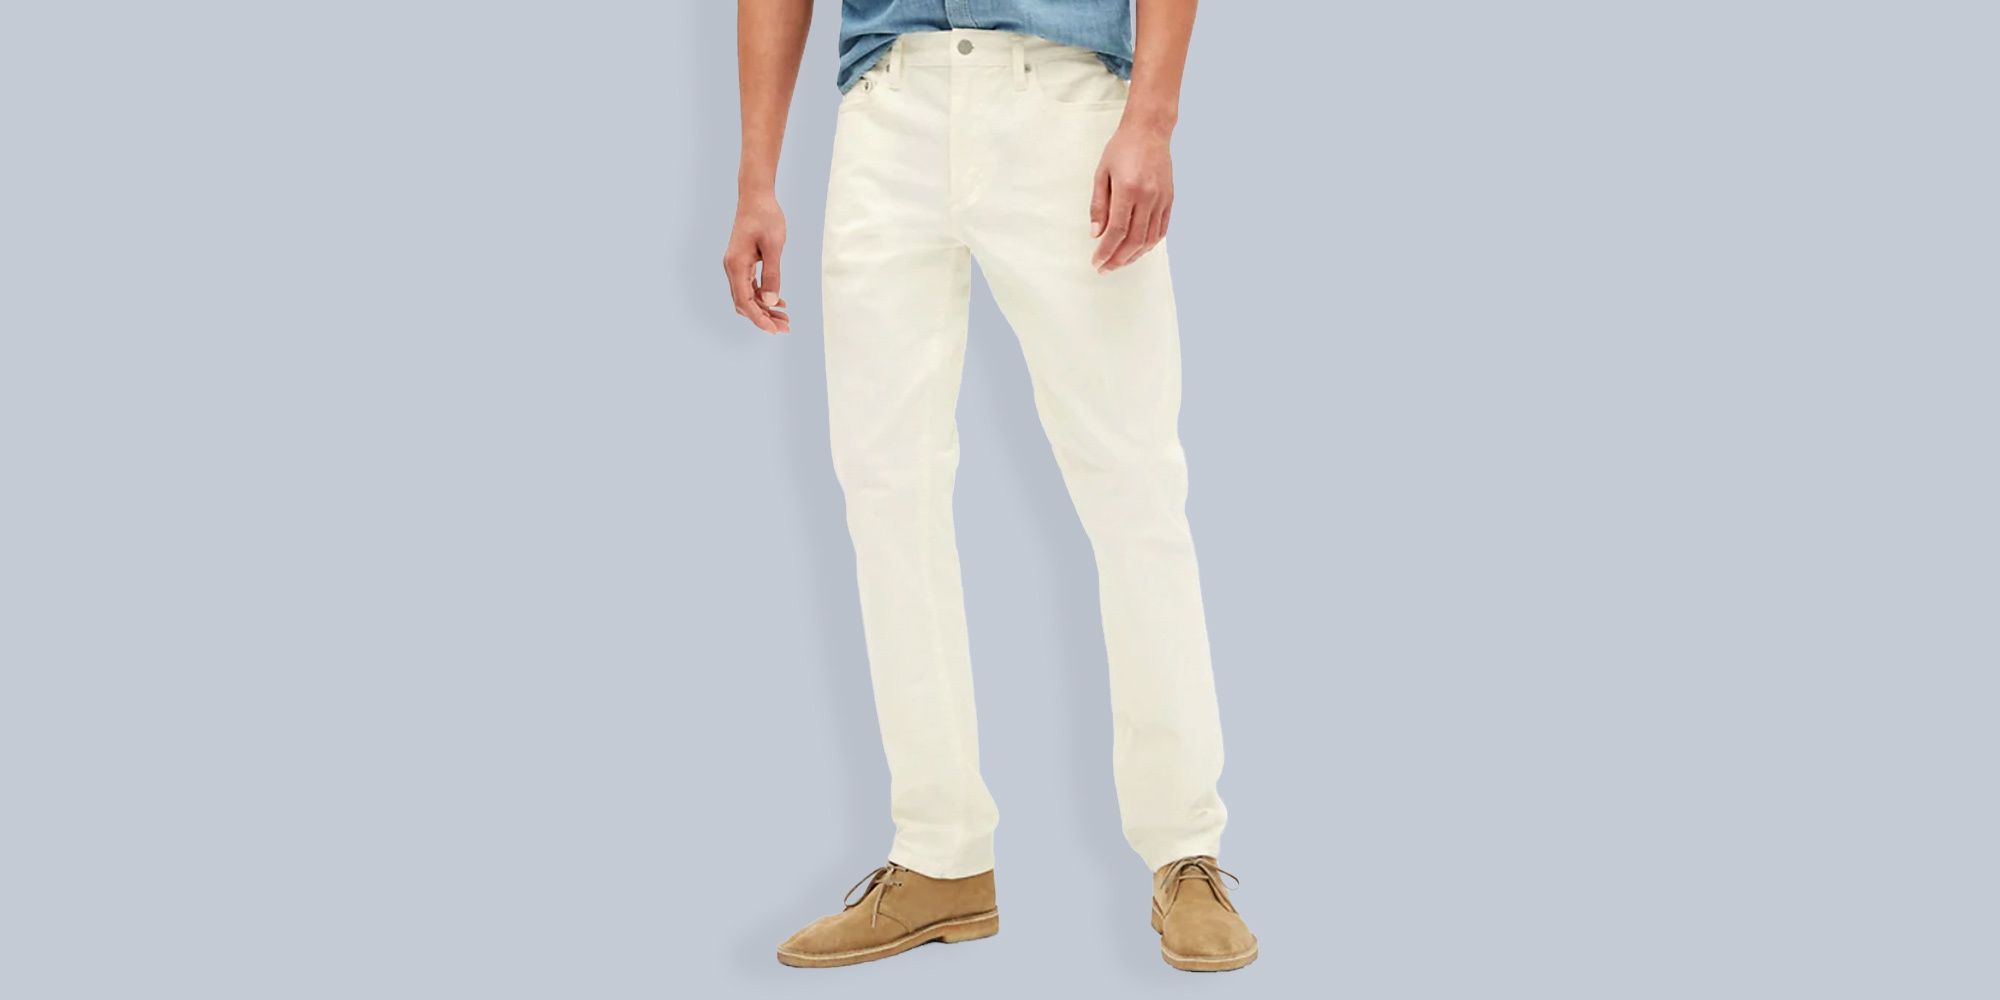 Share 163+ lightweight jeans mens best